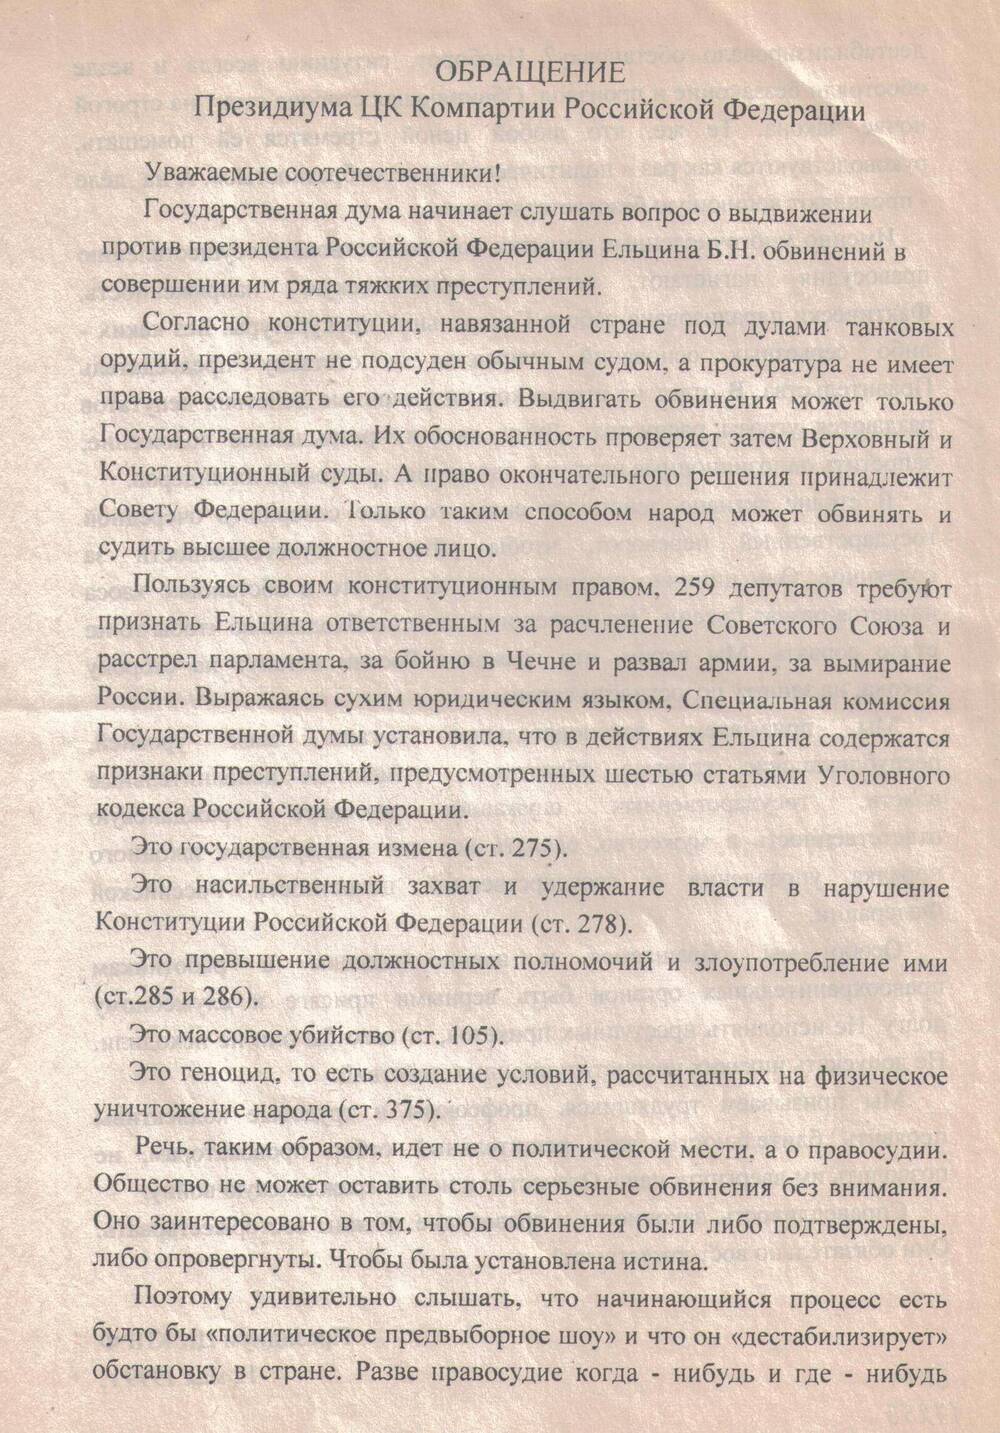 Листовка
с обращением Президиума ЦК Коммунистической 
партии Российской Федерации